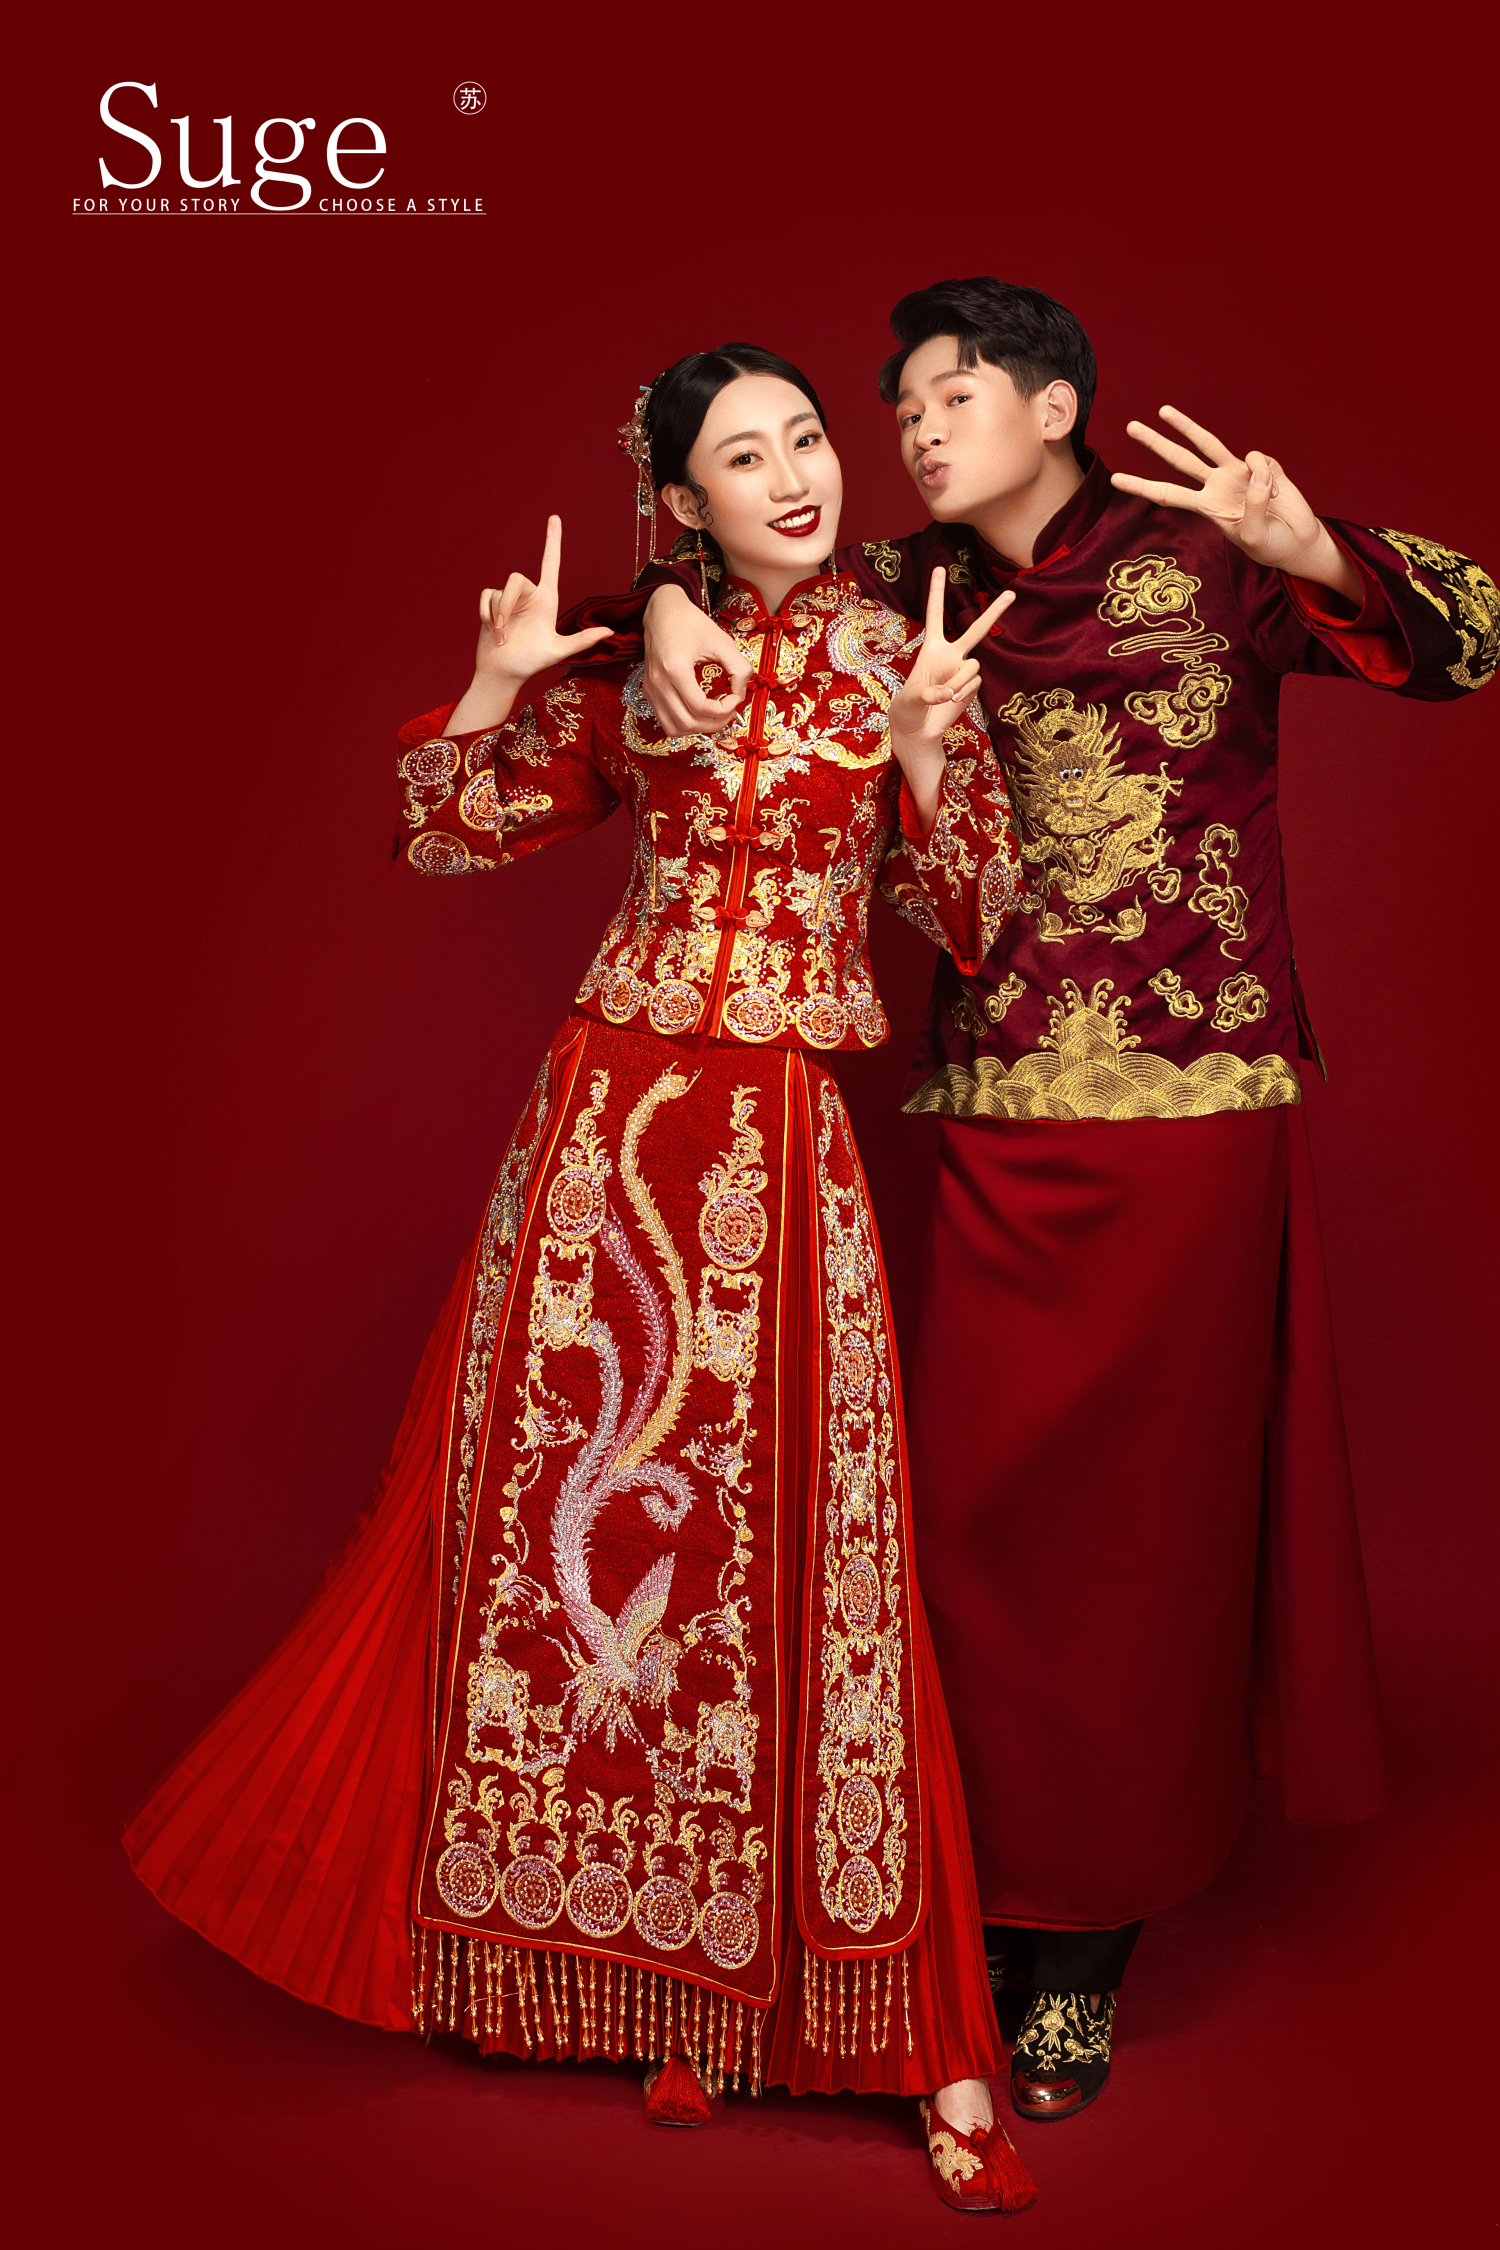 中国风婚纱照 也能如此不同